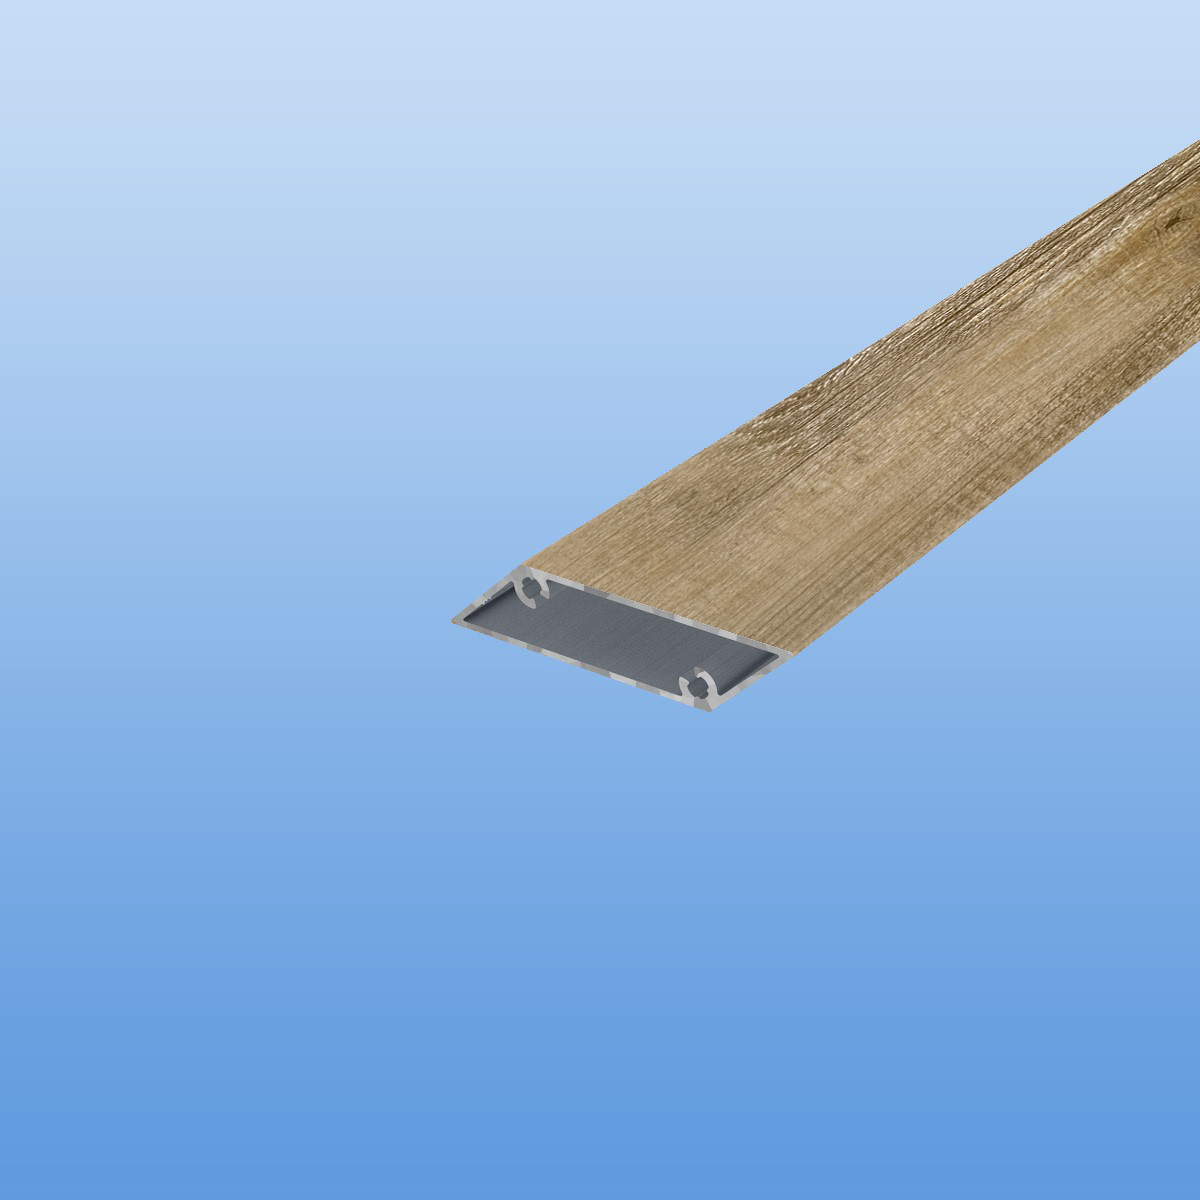 Rhombusprofil aus Aluminium 16mm in Holzoptik - Treibholz - Sichtfläche 53mm